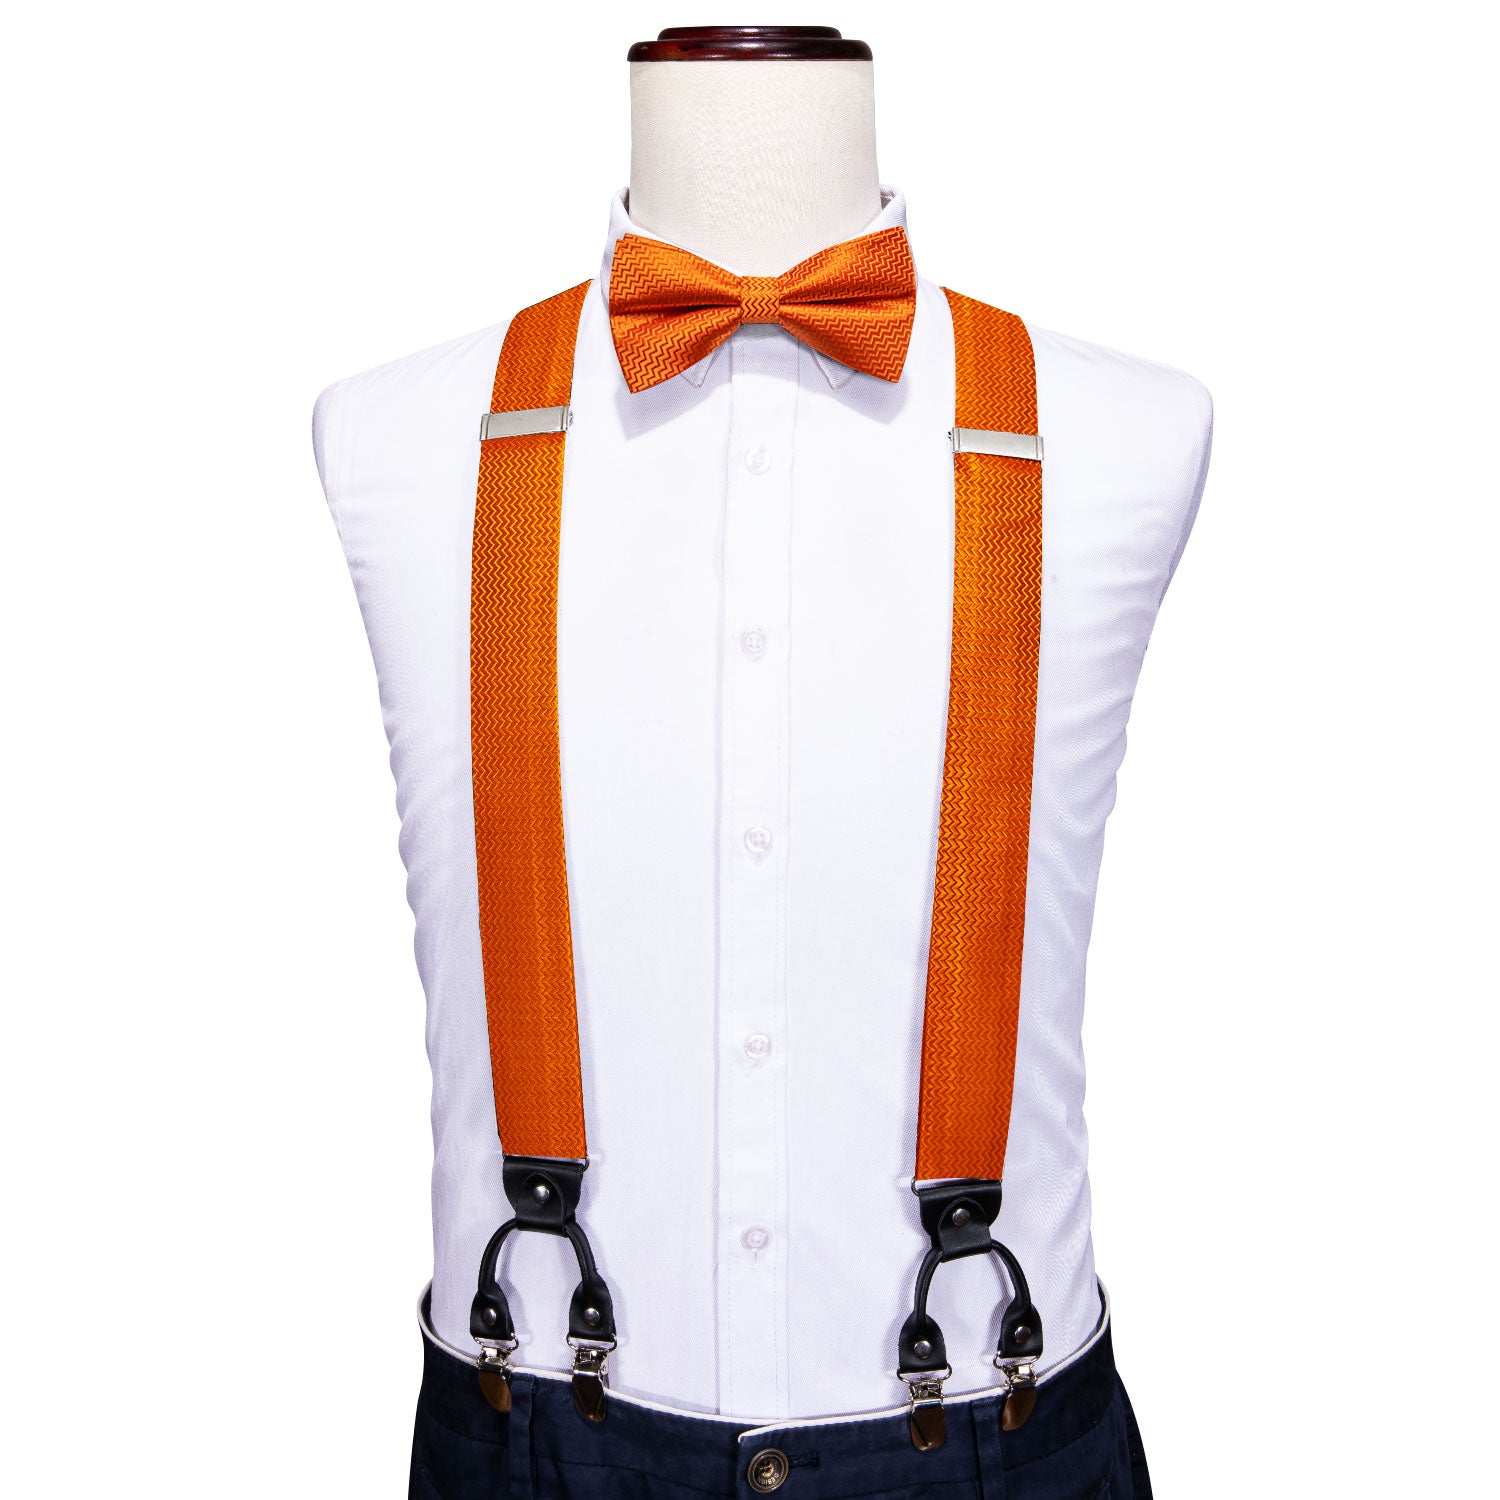 Barry.wang Orange Bow Tie Solid Y Back Adjustable Bow Tie Suspenders Set